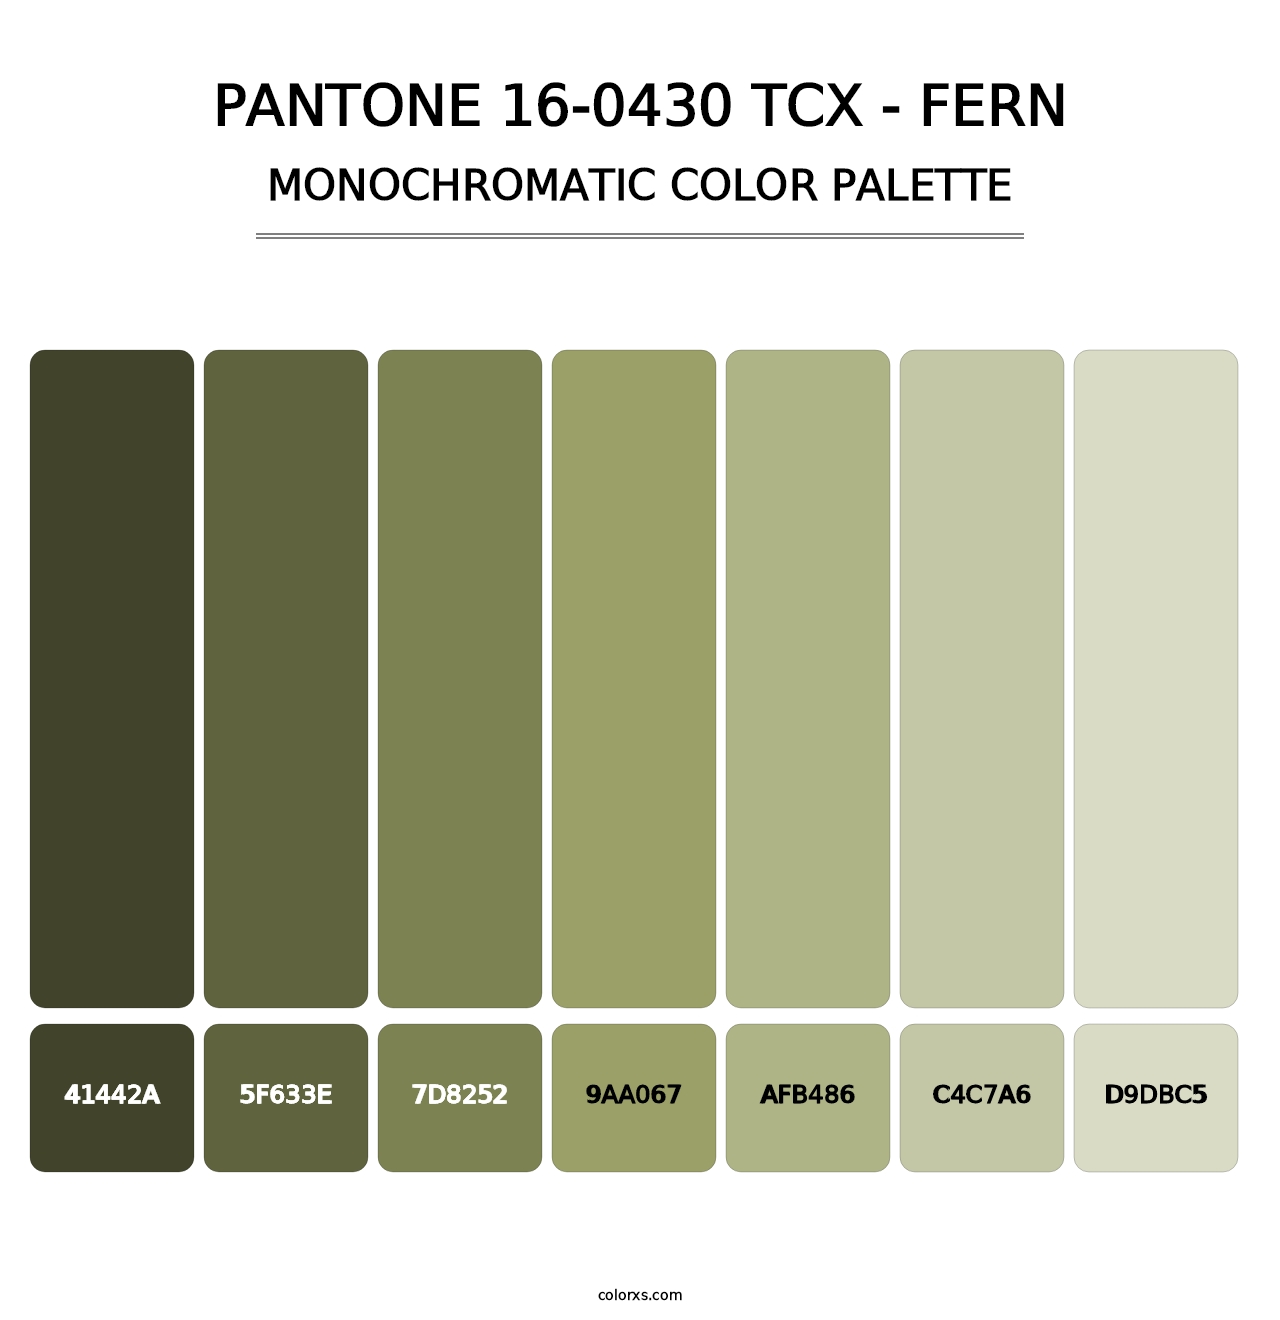 PANTONE 16-0430 TCX - Fern - Monochromatic Color Palette